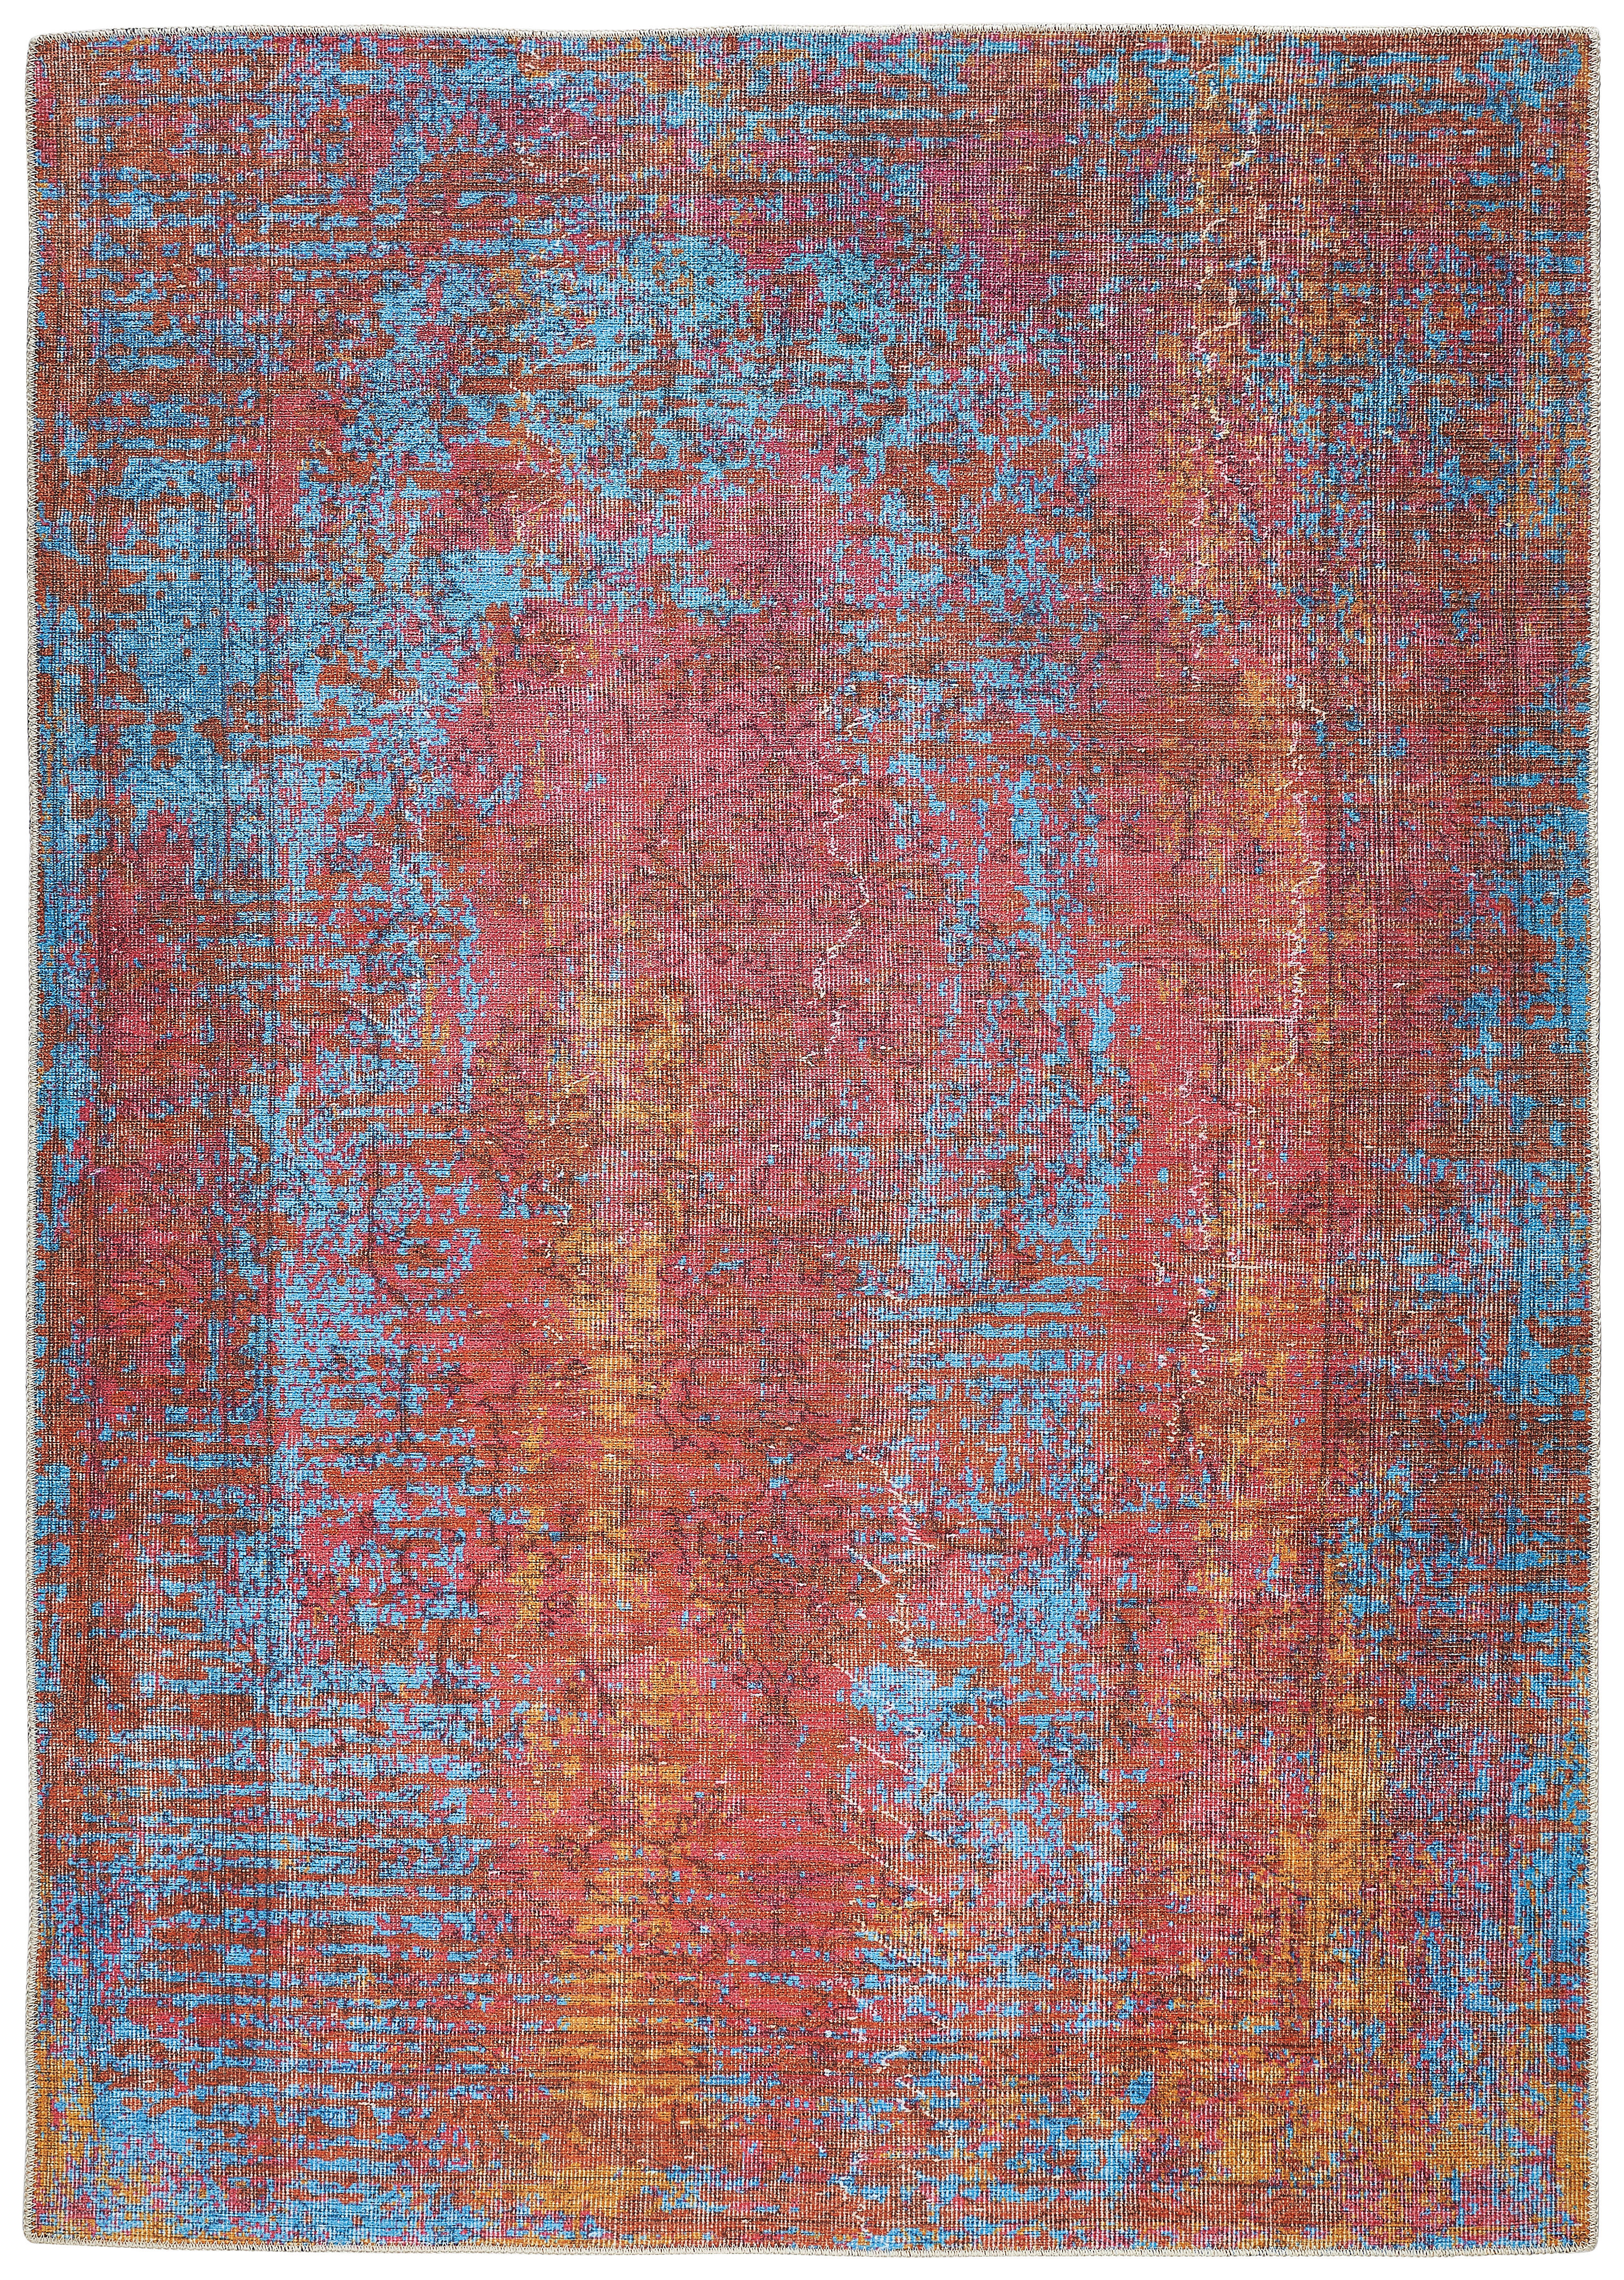 VINTAGE-TEPPICH 140/190 cm  - Rot/Multicolor, Trend, Textil (140/190cm) - Novel